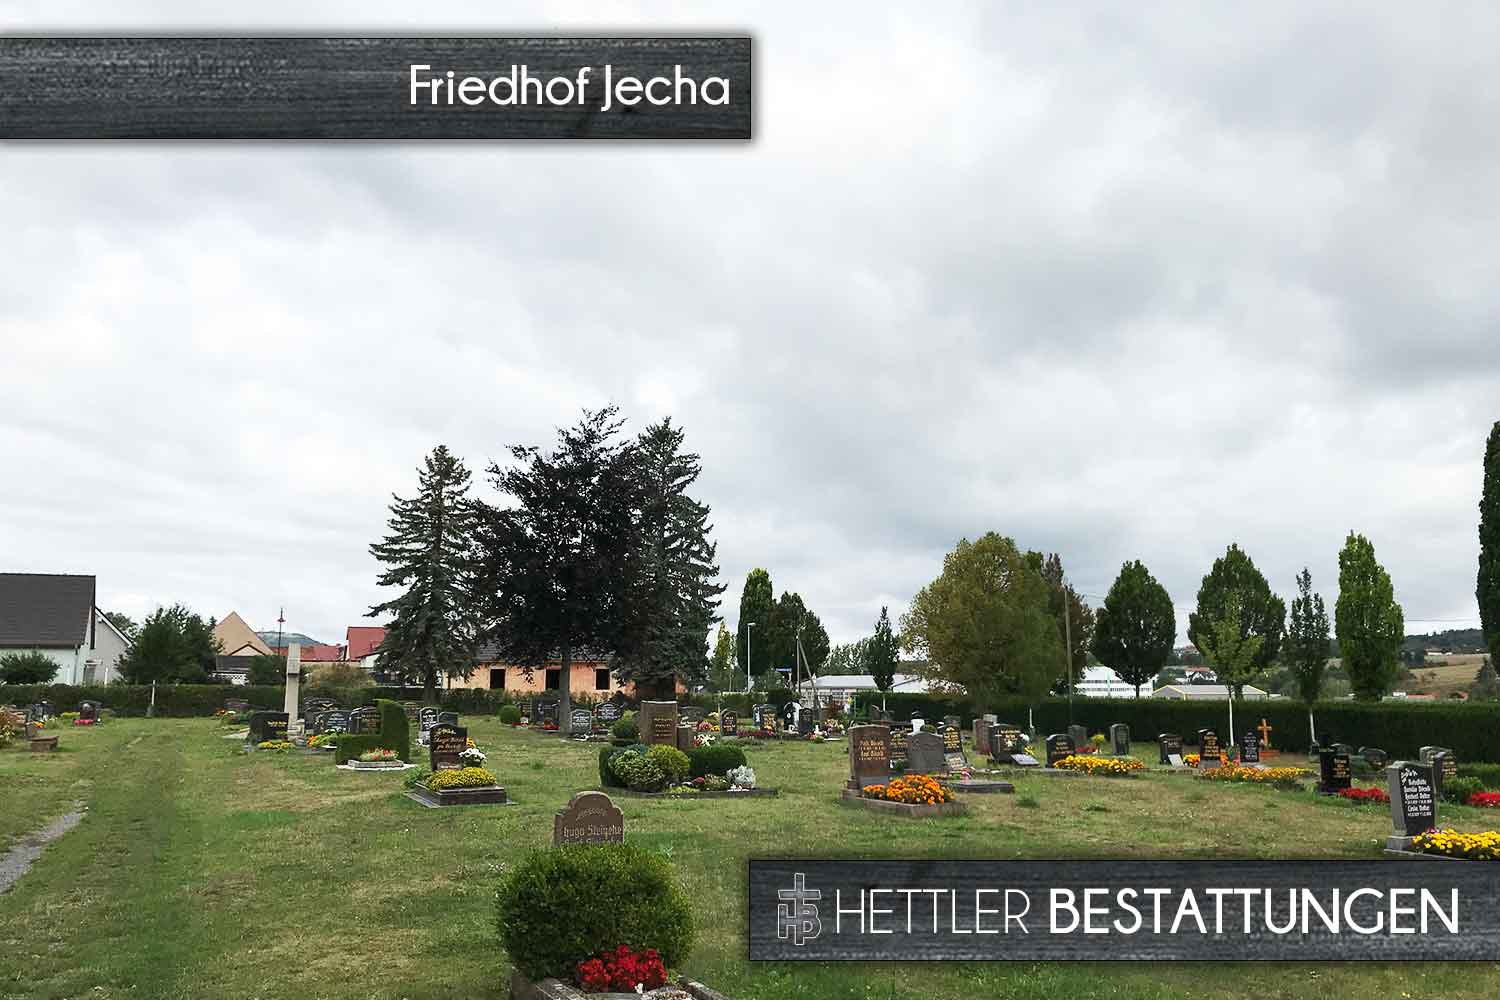 Friedhof in Sondershausen-Jecha. Ihr Ort des Abschieds mit Hettler Bestattungen.